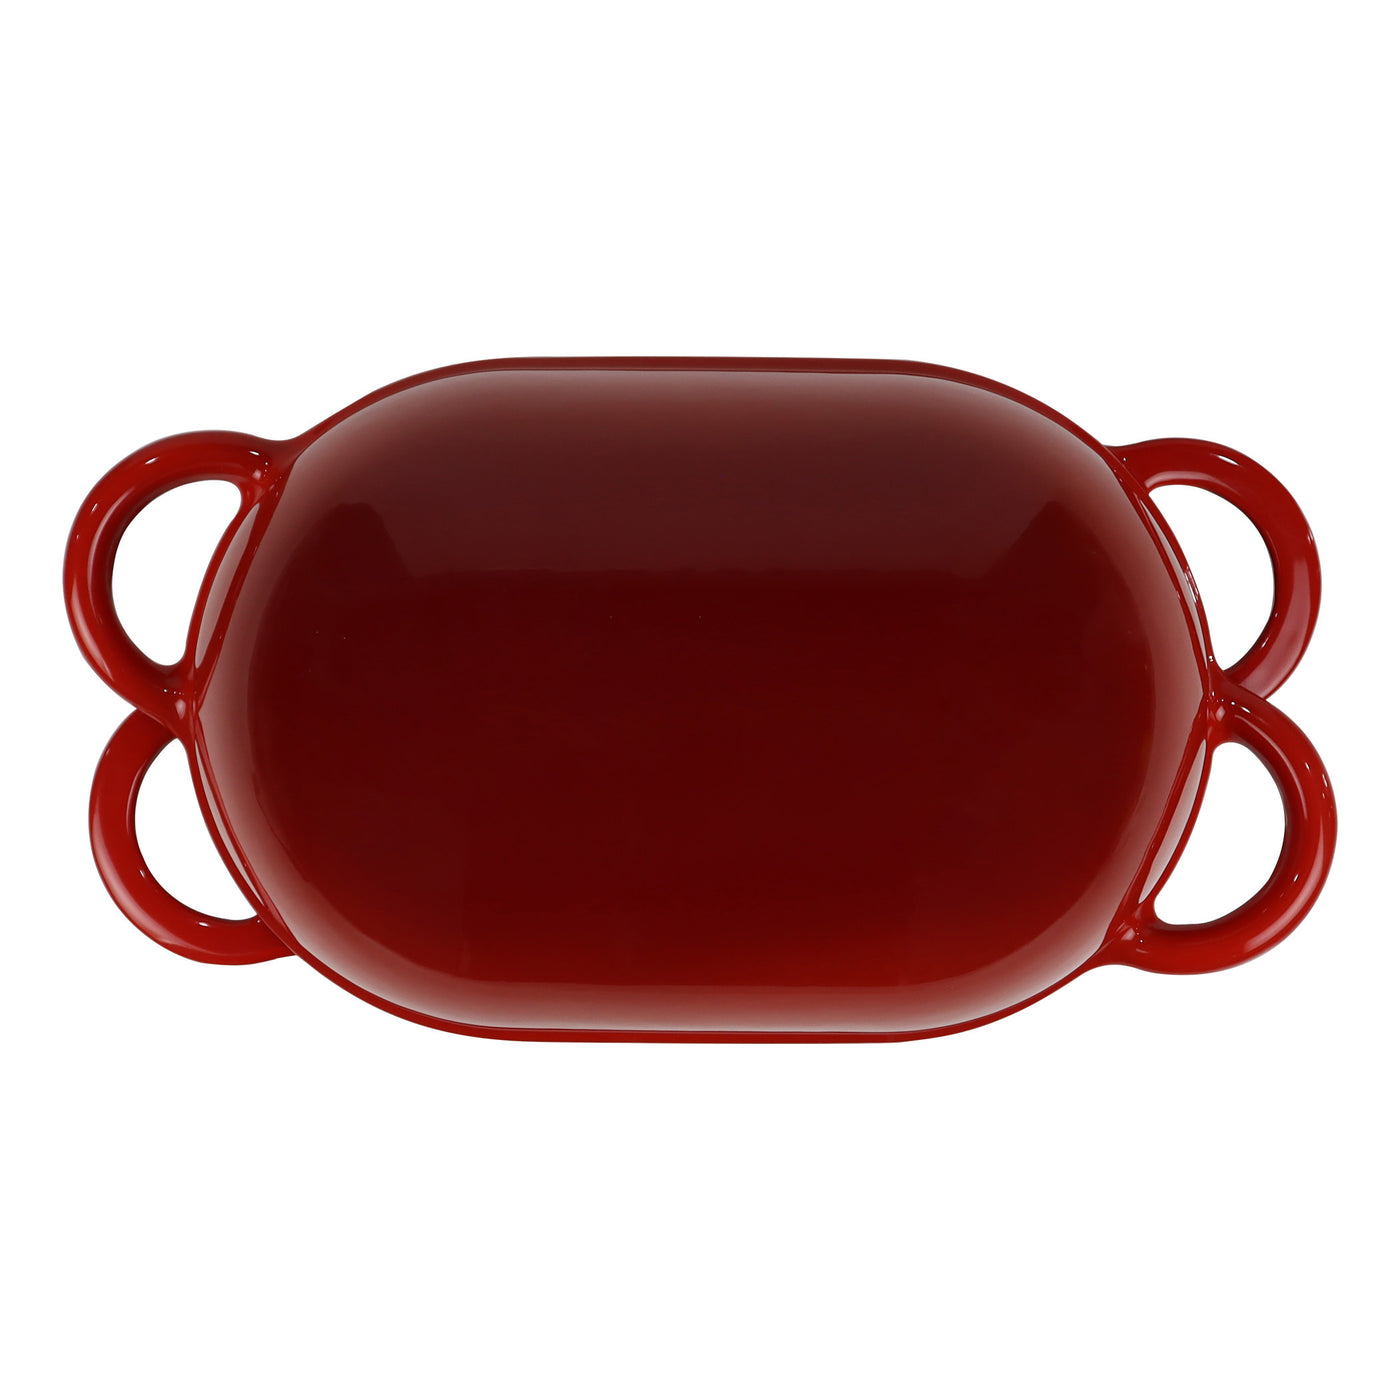 Molde para pan de hierro fundido esmaltado con tapa, rojo, forma apta para horno para hornear, kit de pan artesanal - Molde para pan